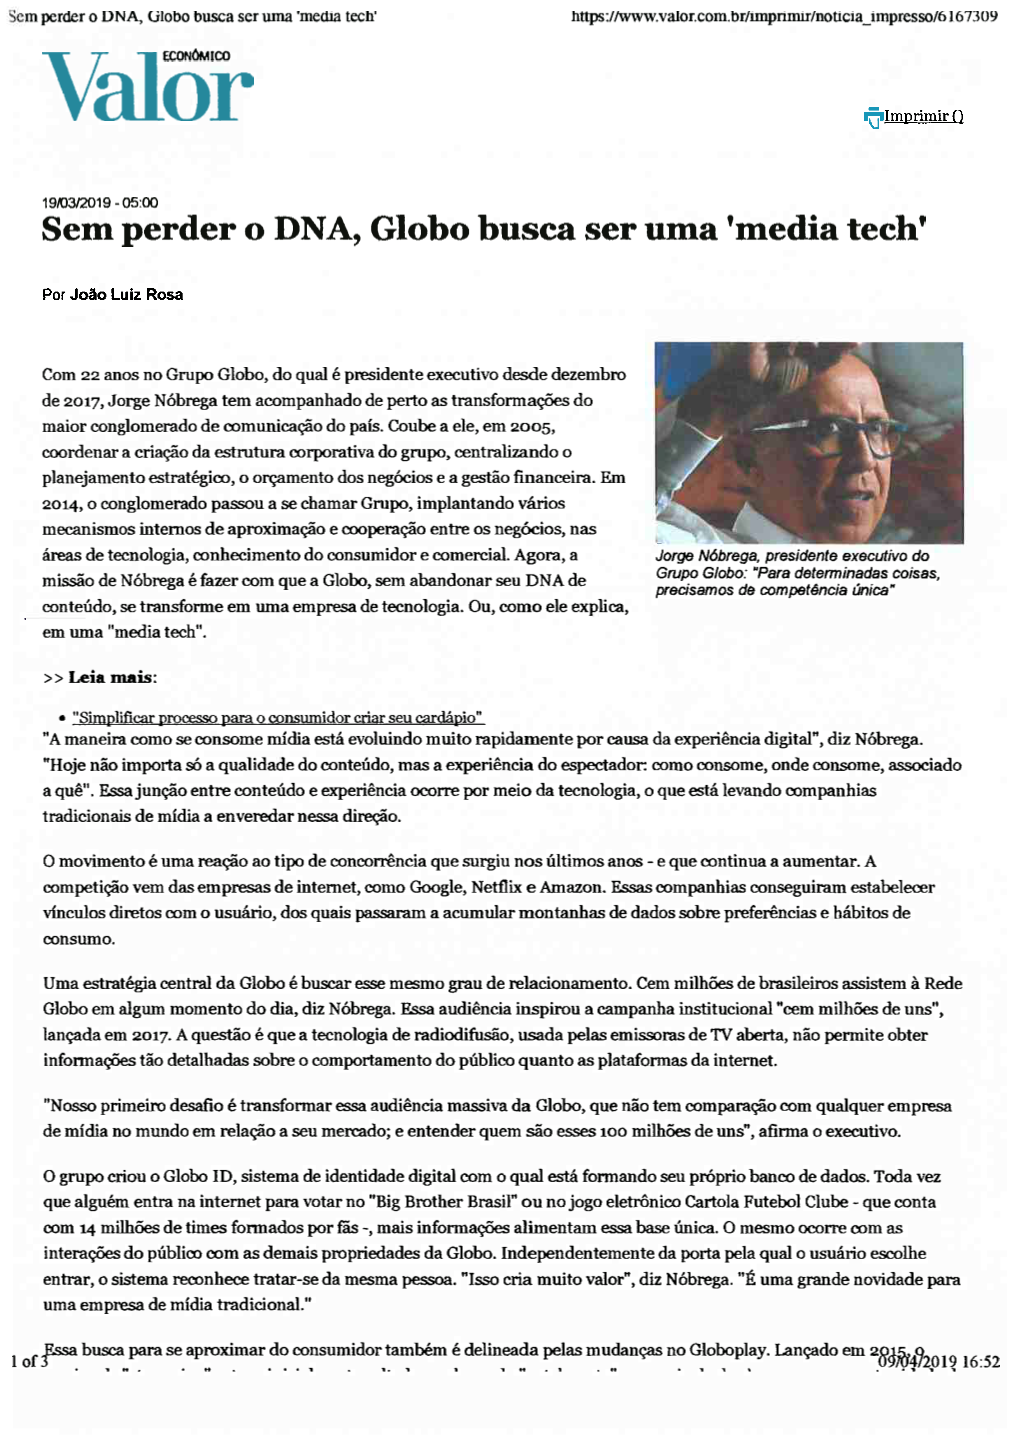 Sem Perder O DNA, Globo Busca Ser Uma 'Media Tech'